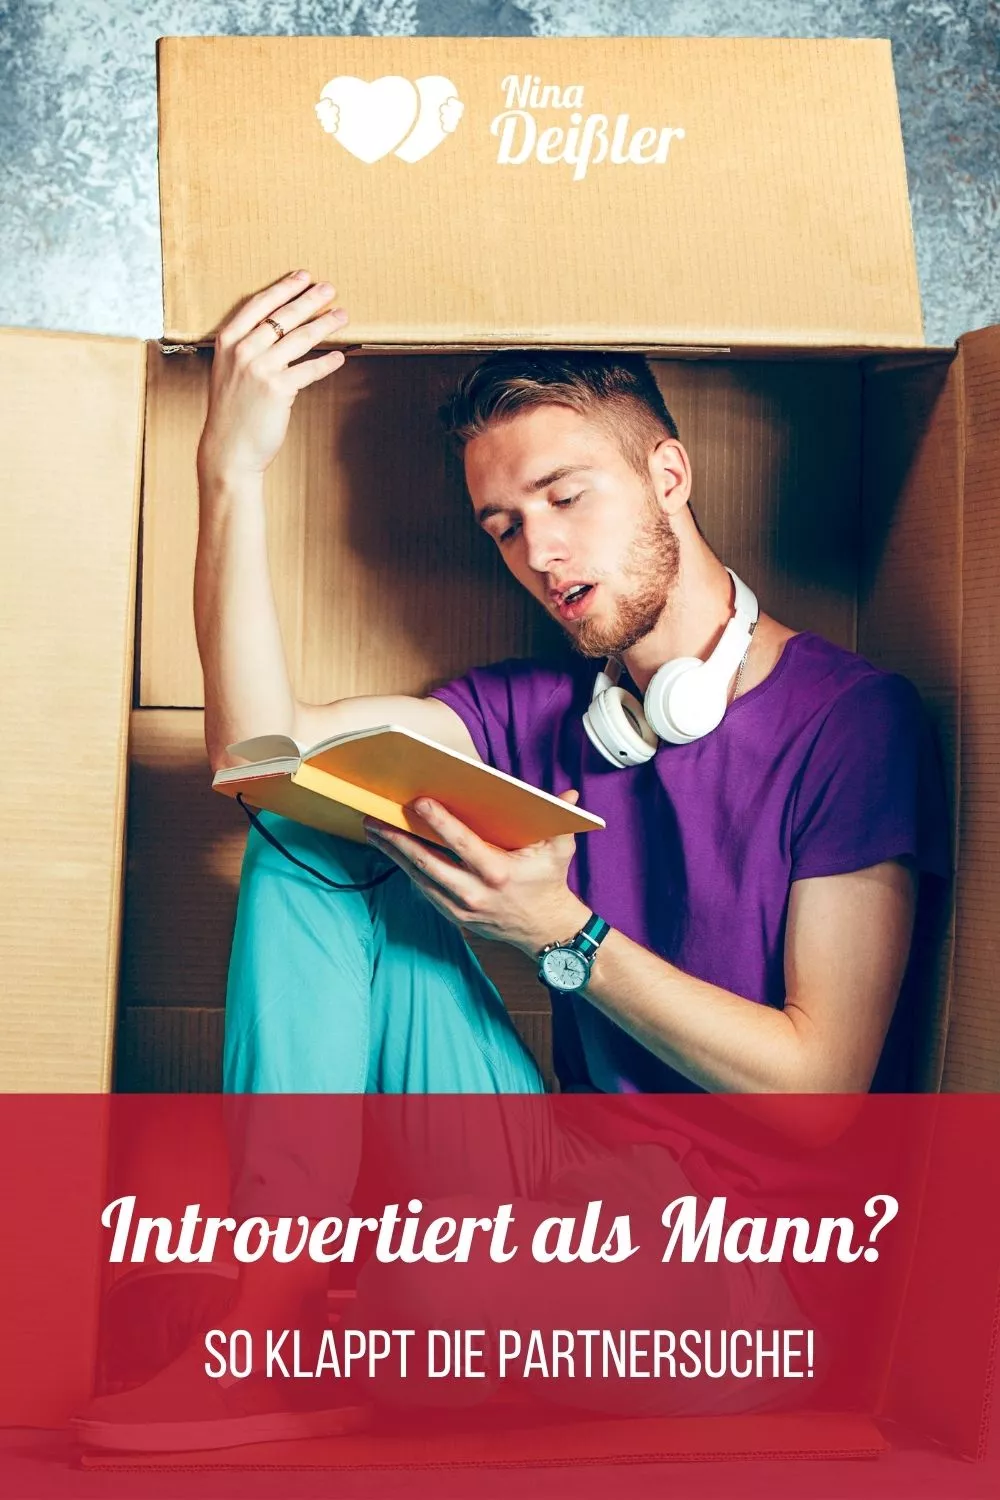 Ein interesse introvertierter mann zeigt wie Versteckt er